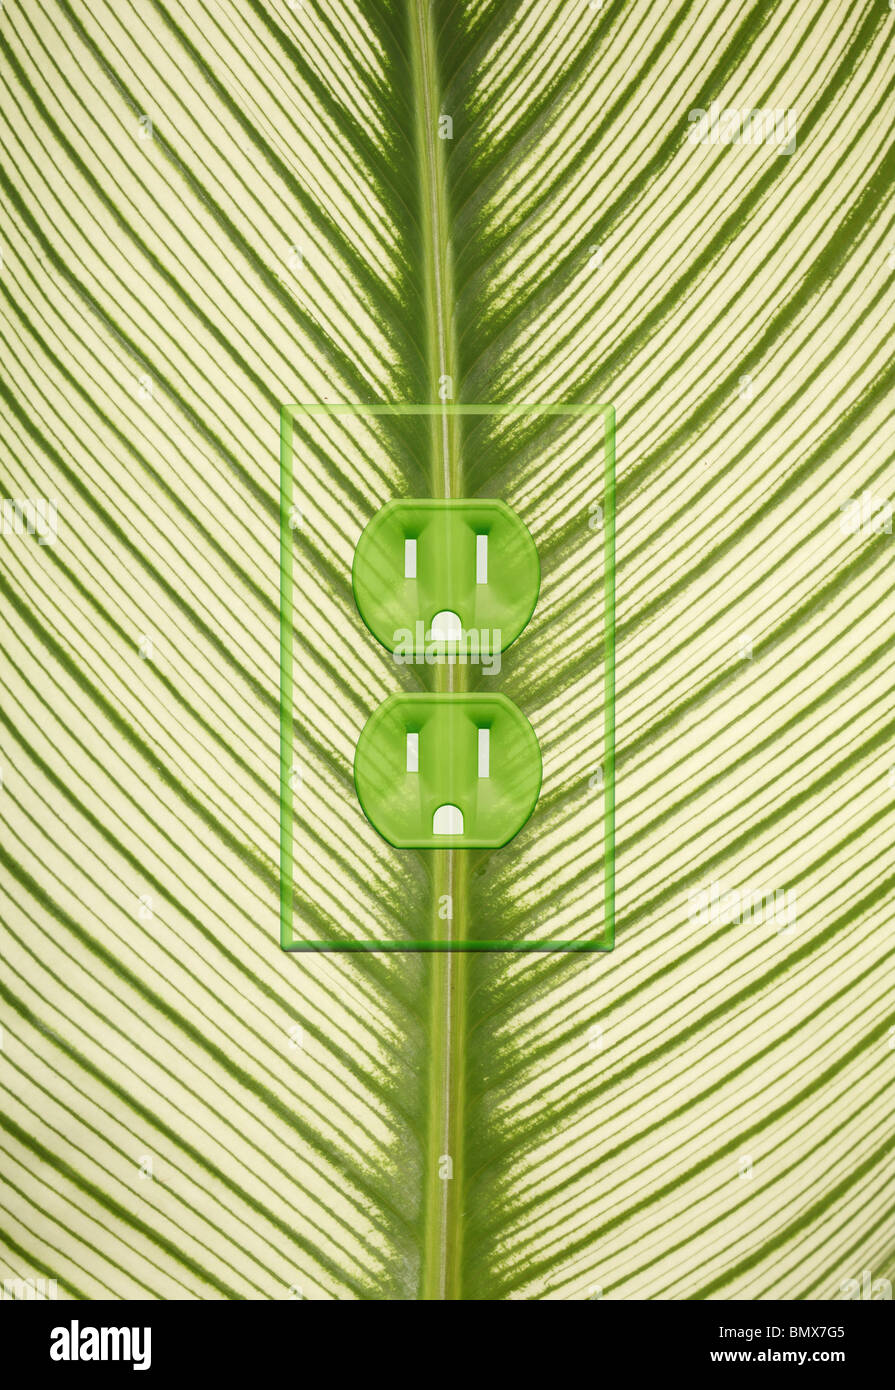 Une plante verte feuille avec une prise de courant sur le dos Banque D'Images